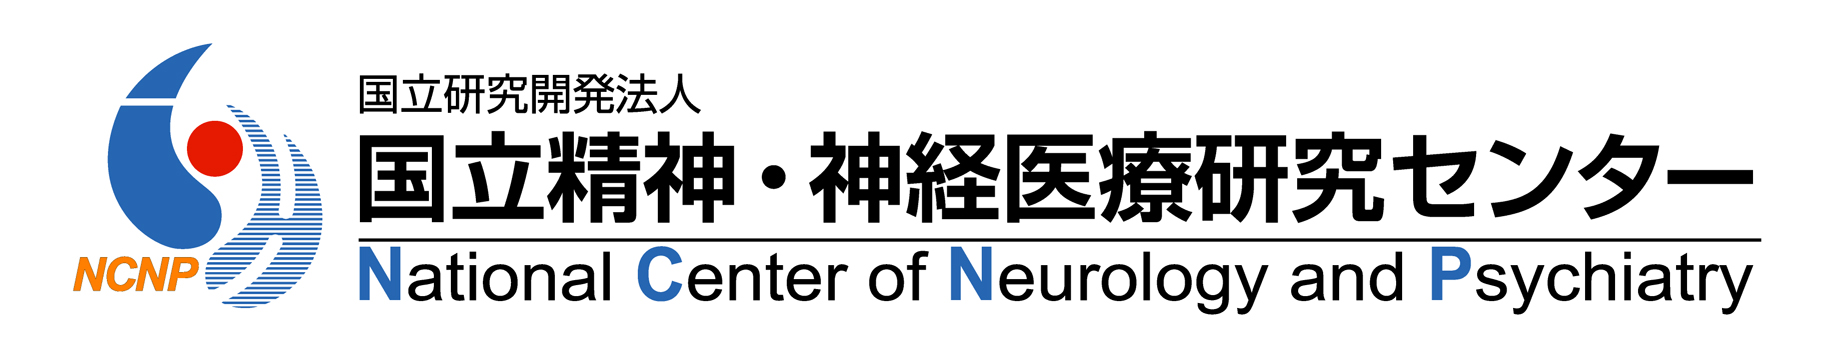 ncnp-logo-org.jpeg